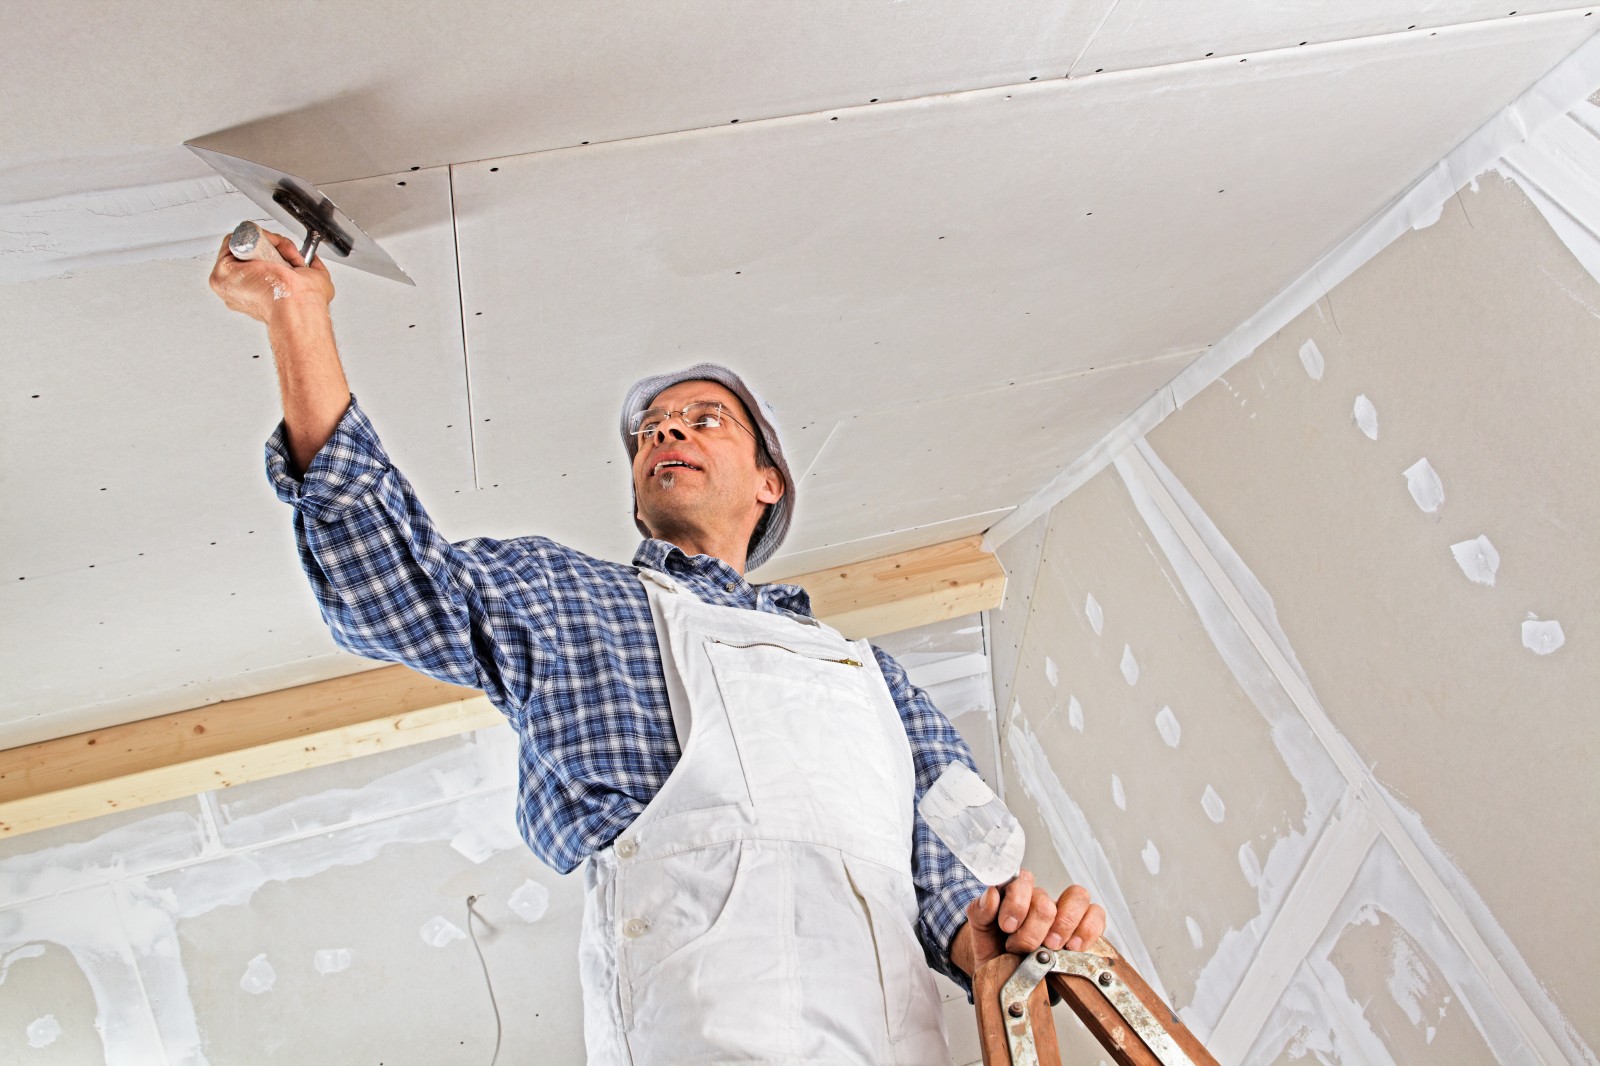 Как отремонтировать потолок в квартире. ремонт потолка своими руками – 4 варианта проведения работ | ремонт как искусство